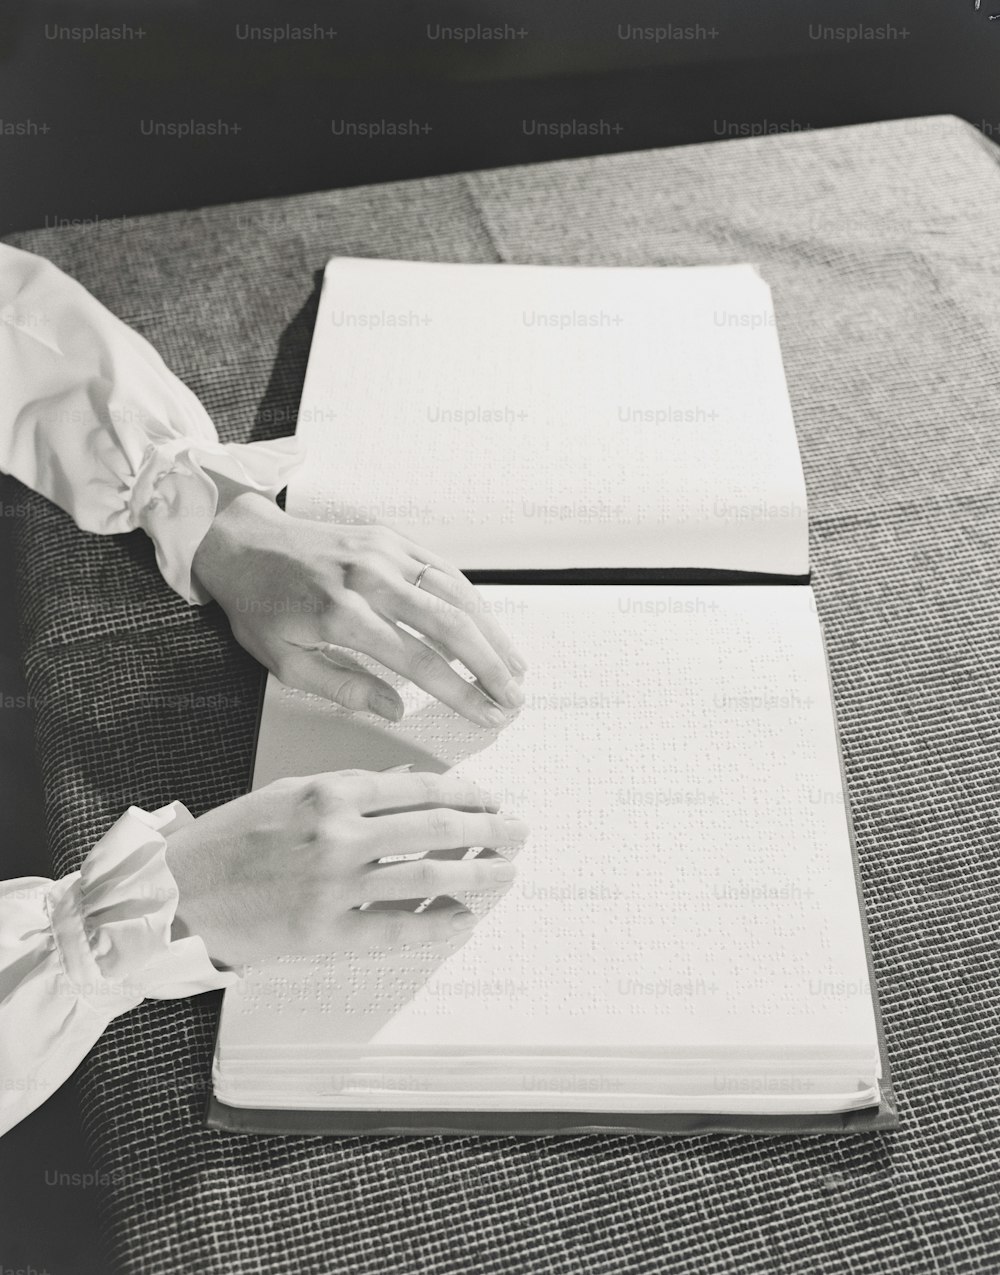 ETATS-UNIS - Circa 1940s : Mains de femme lisant un livre en braille sur une table.